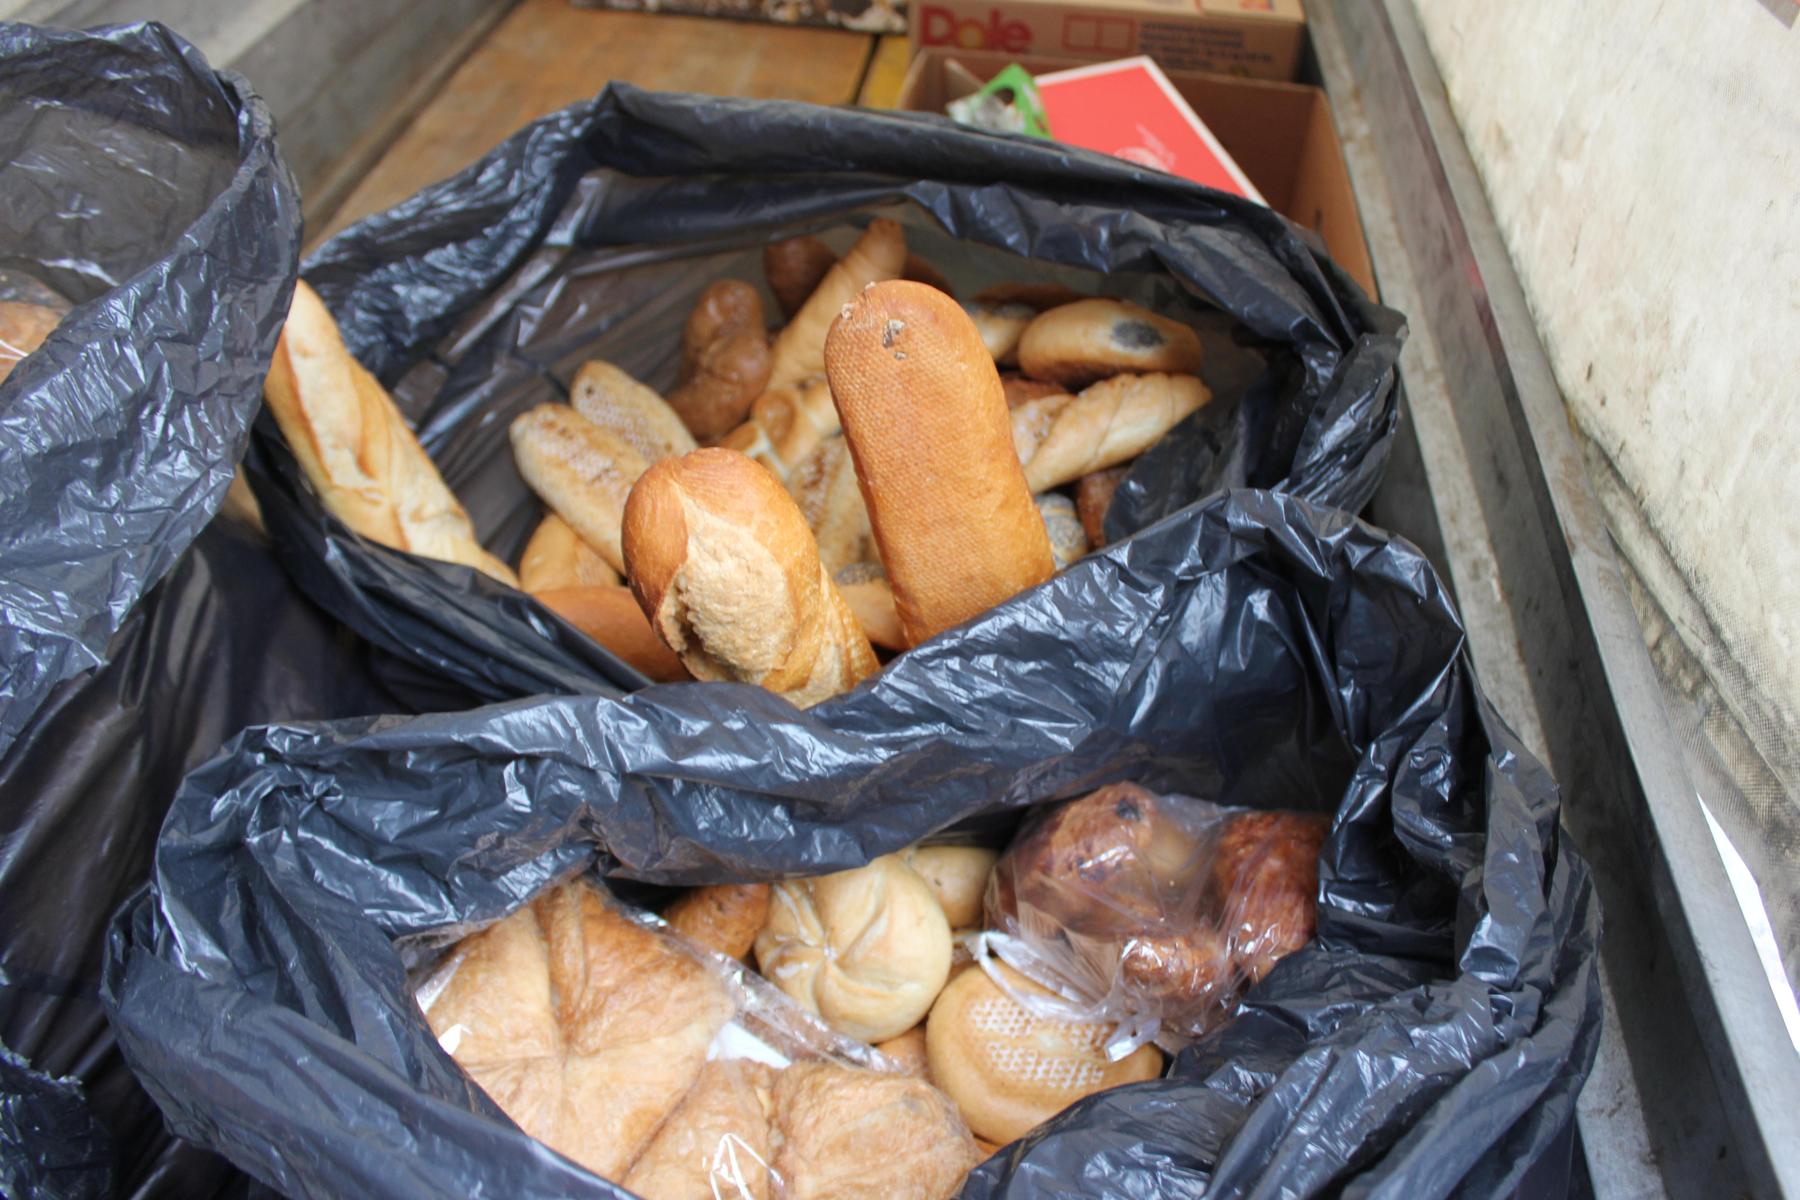 Essen statt wegwerfen: Jeder Haushalt wirft Lebensmittel im Wert von 300 Euro weg